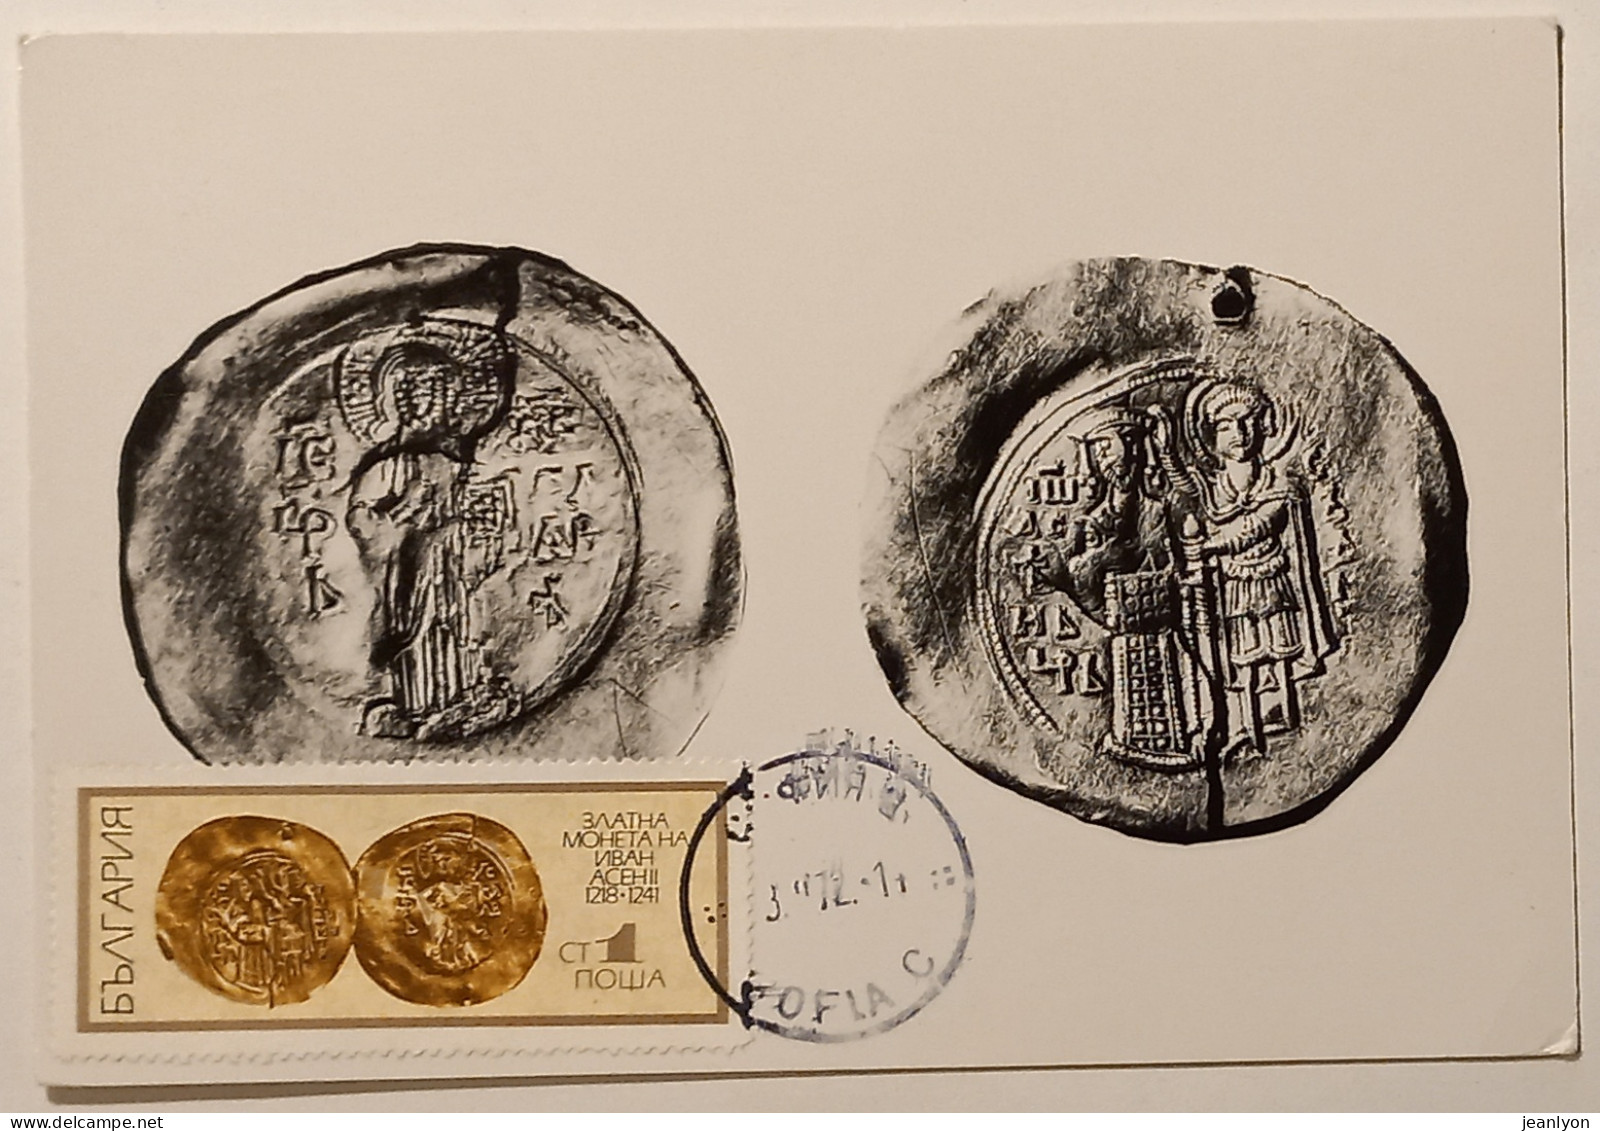 PIECE MONNAIE DU ROI BULGARE IVAN ASEN II OR - Carte Philatélique Timbre Et Cachet - Monnaies (représentations)